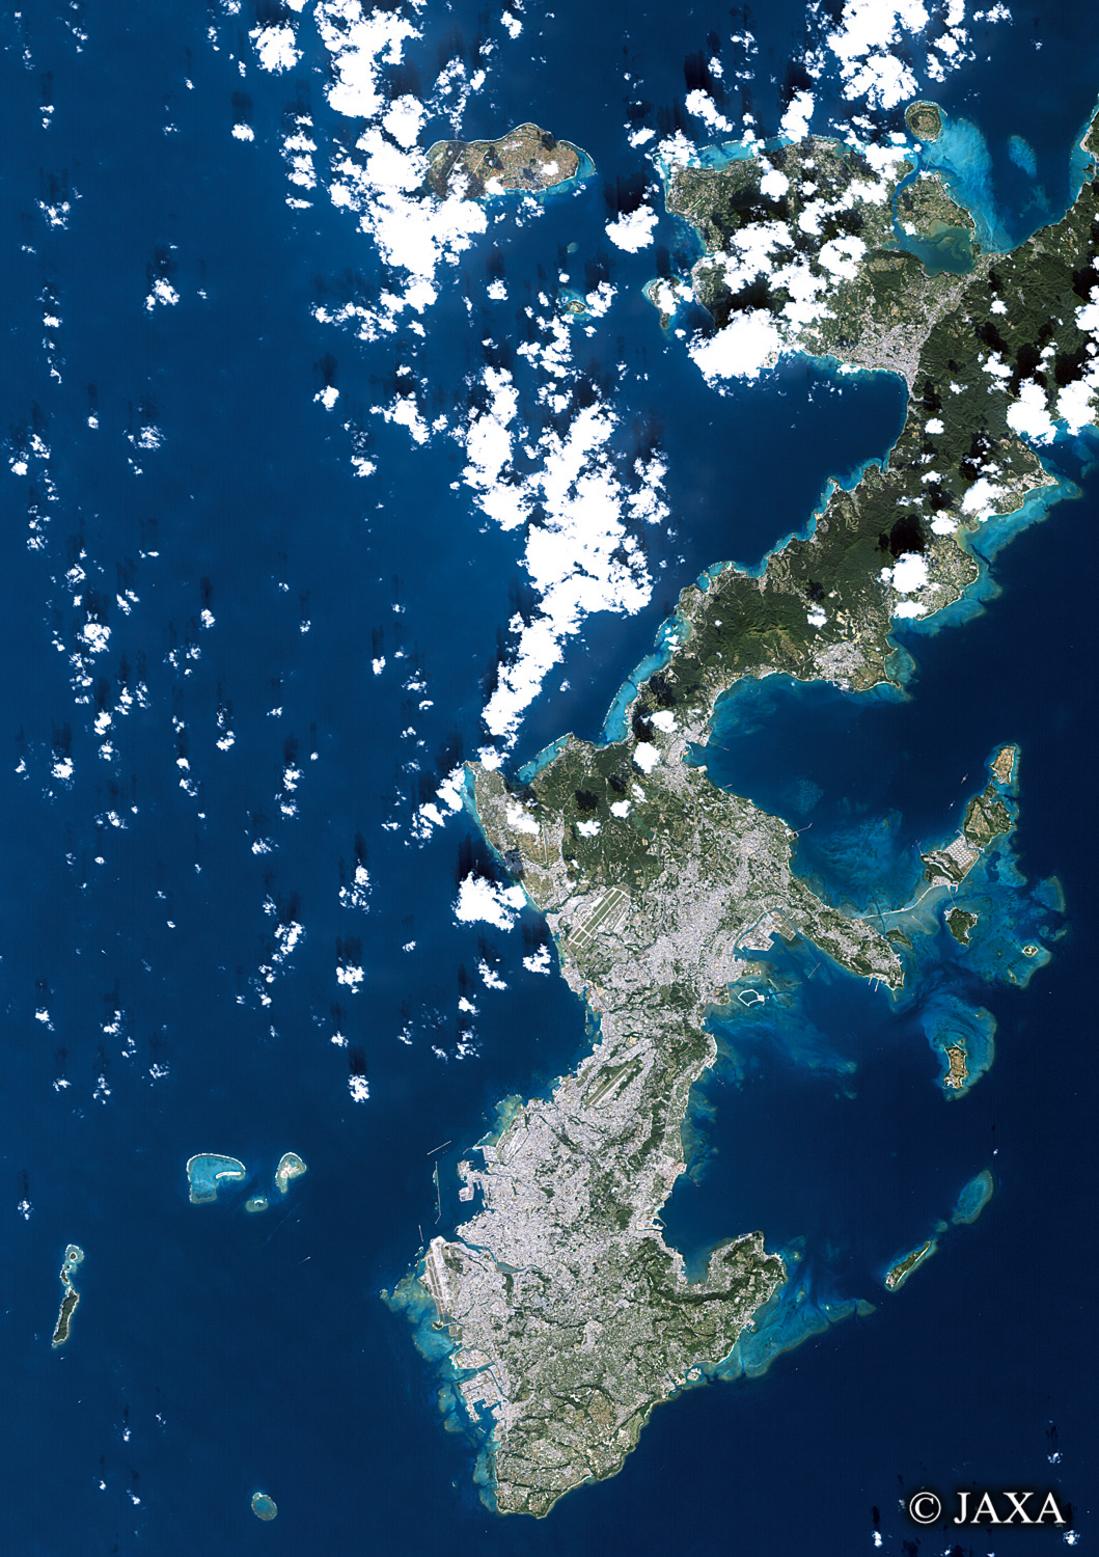 だいちから見た日本の都市 沖縄:衛星画像